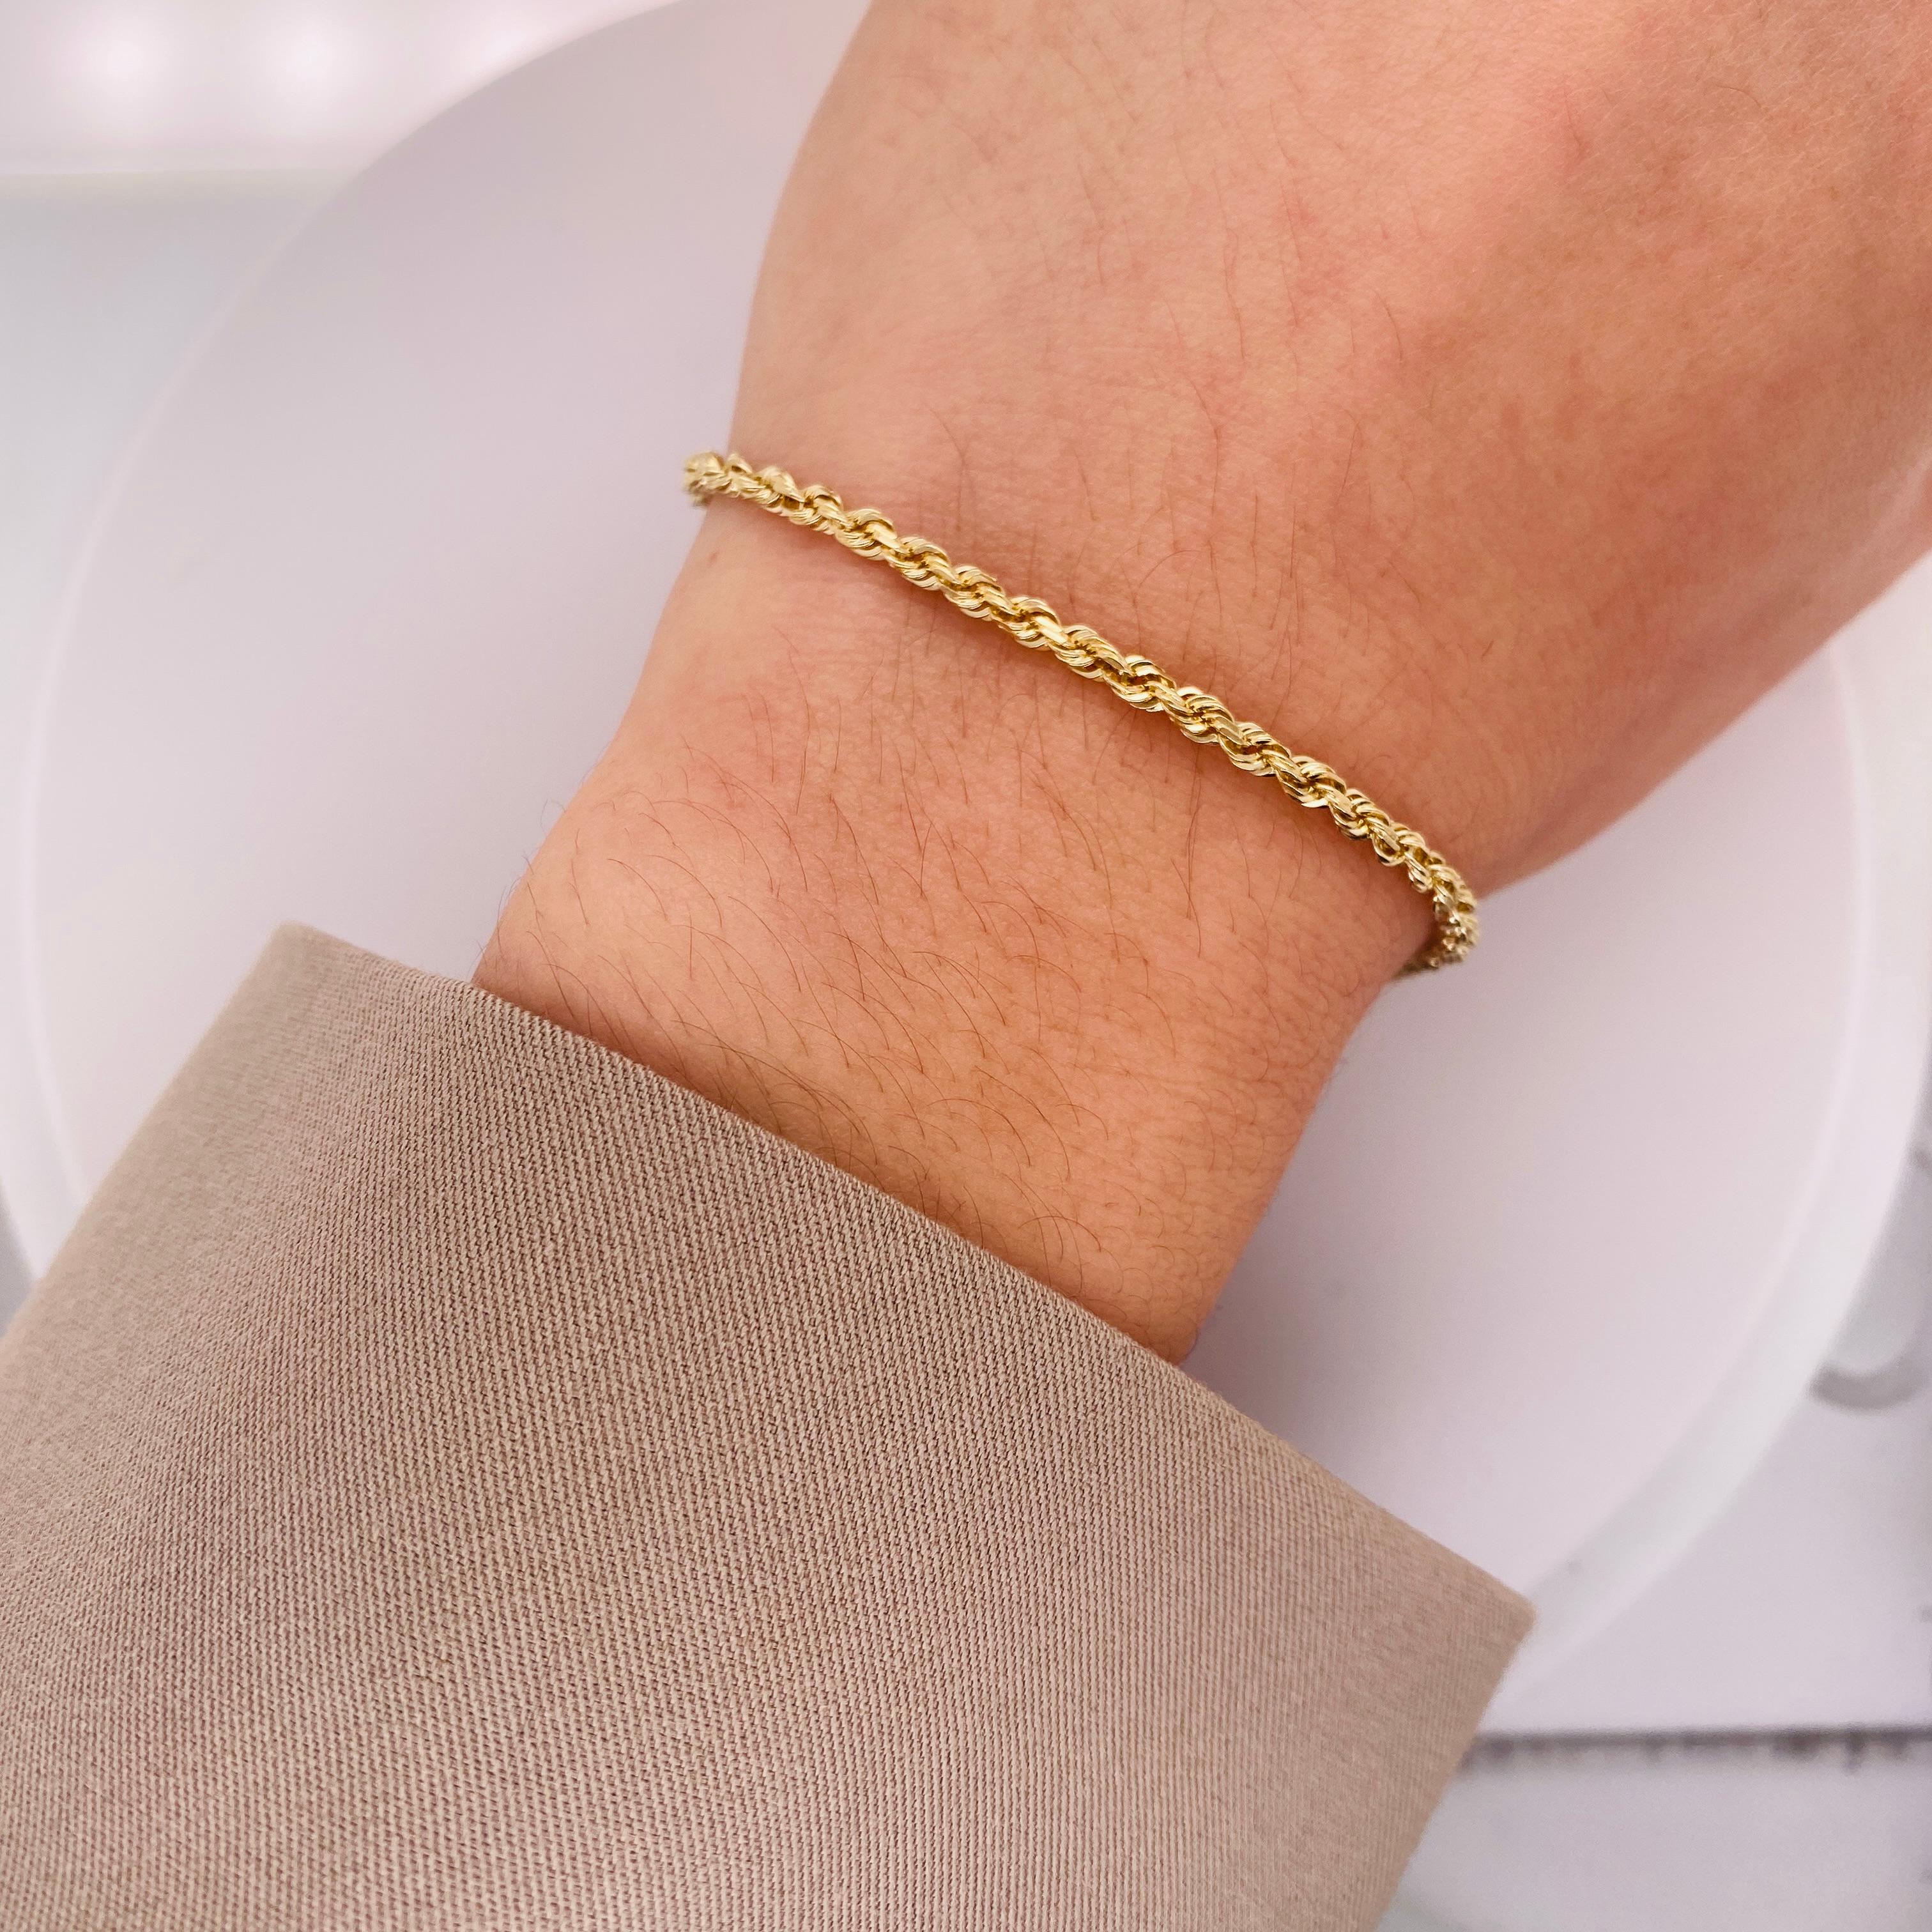 Dieses charmante Armband ist ein perfektes Geschenk für Ihre Liebsten oder für Sie selbst! Wunderschön schlank und bequem, ist dieses Seilkettenarmband die perfekte Ergänzung für jede Schmucksammlung! Die schlanke, abgerundete und gewundene Form